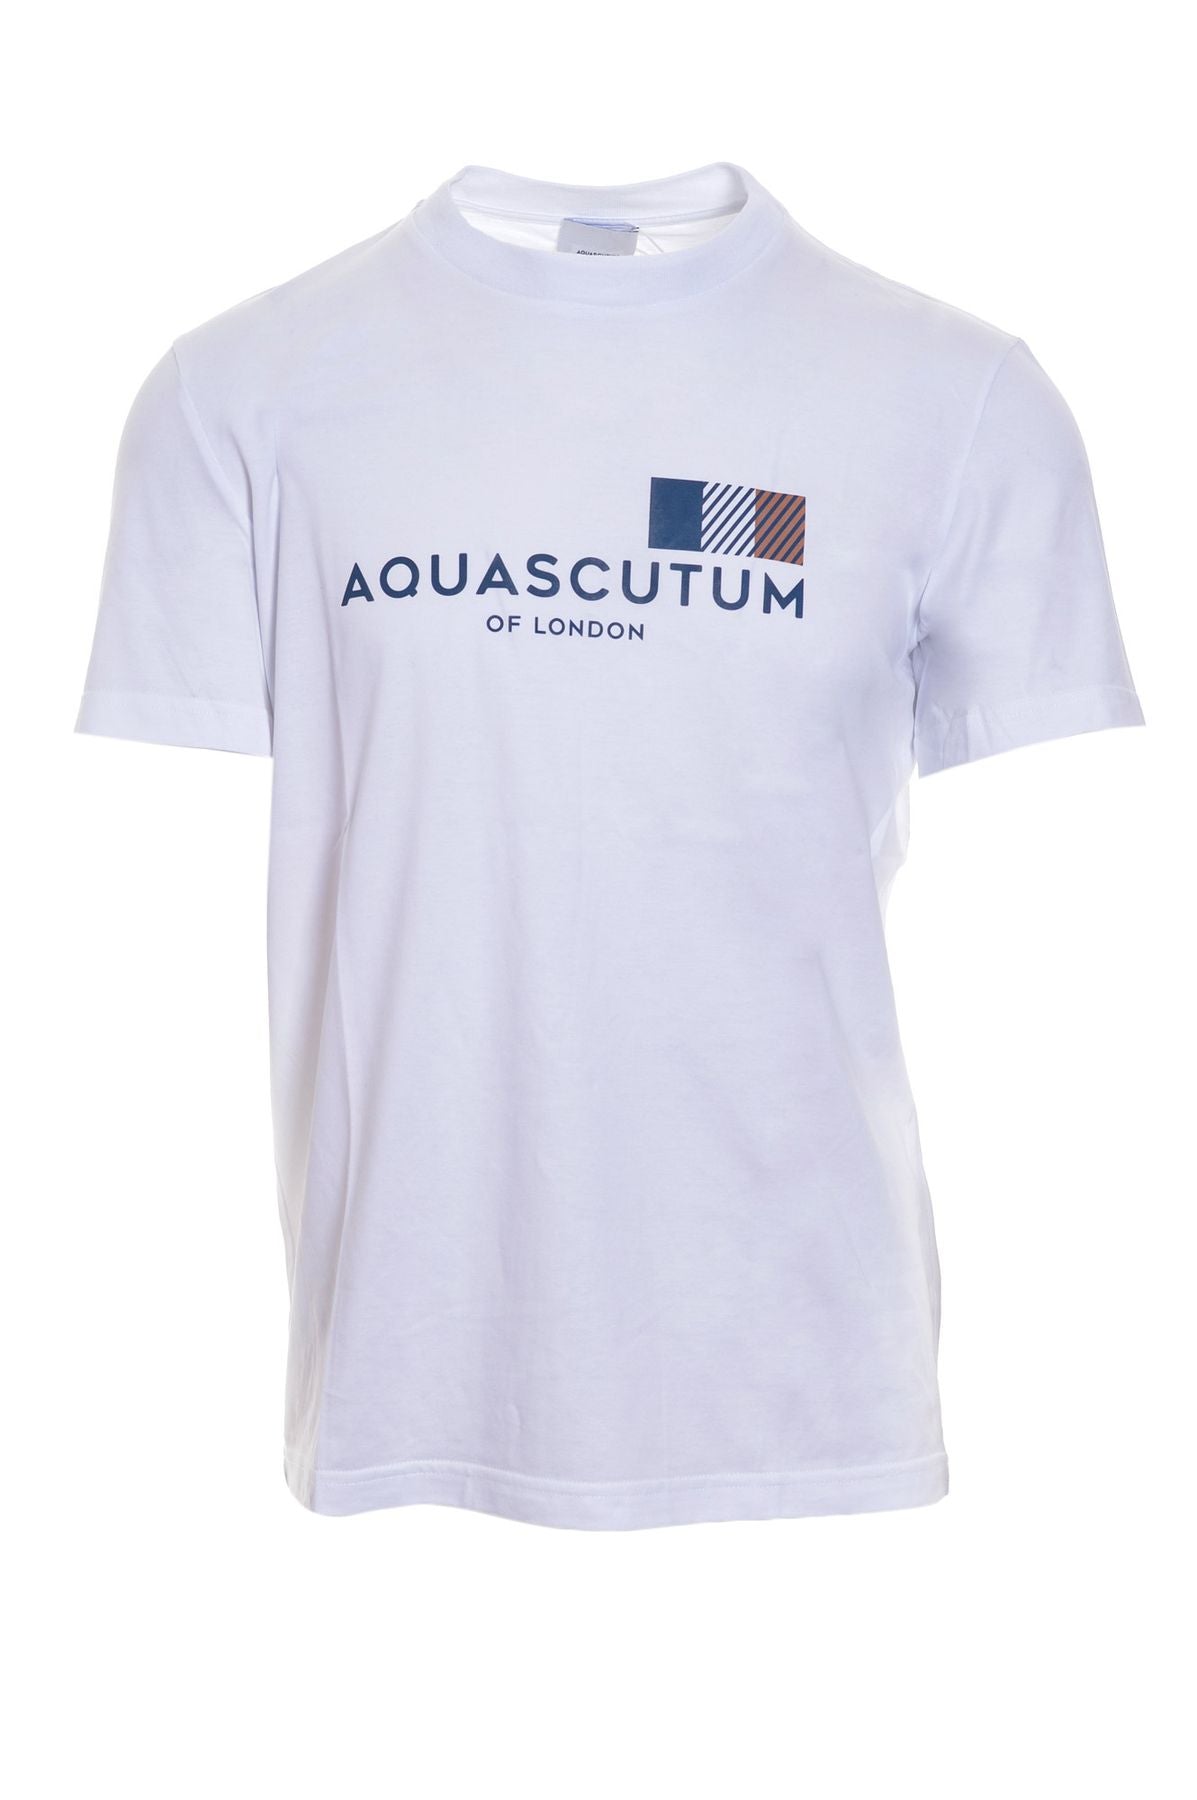 j200ta02 - T-shirt - AQUASCUTUM